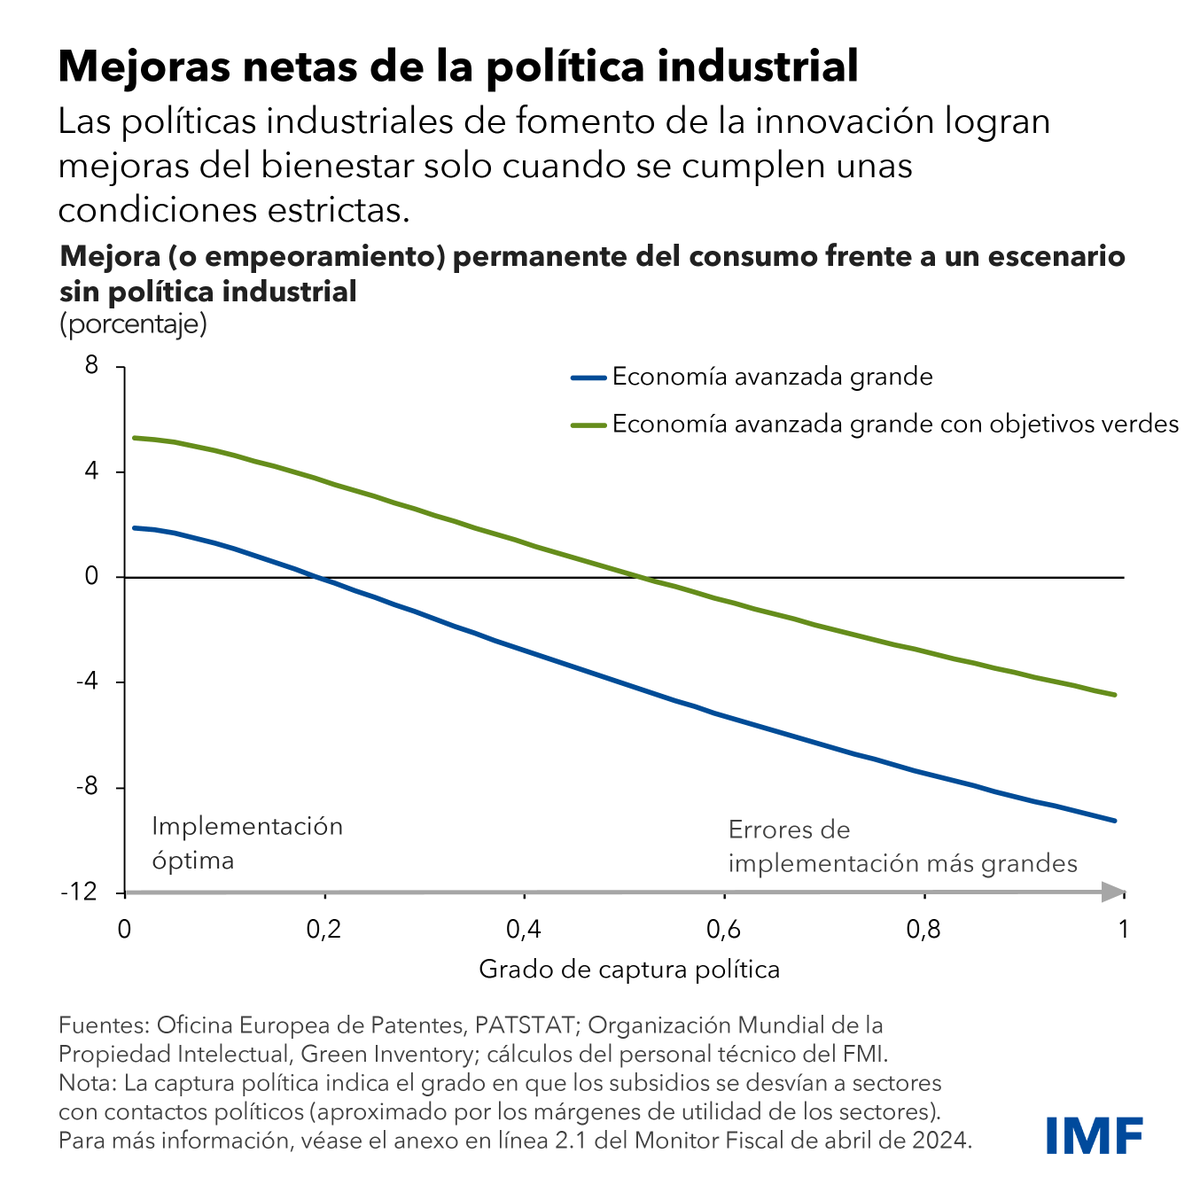 La política industrial vuelve a estar en boga, pero un nuevo estudio del FMI muestra que los retos de su ejecución pueden reducir sus beneficios económicos y sociales. Lea más aquí: imf.org/es/Blogs/Artic…